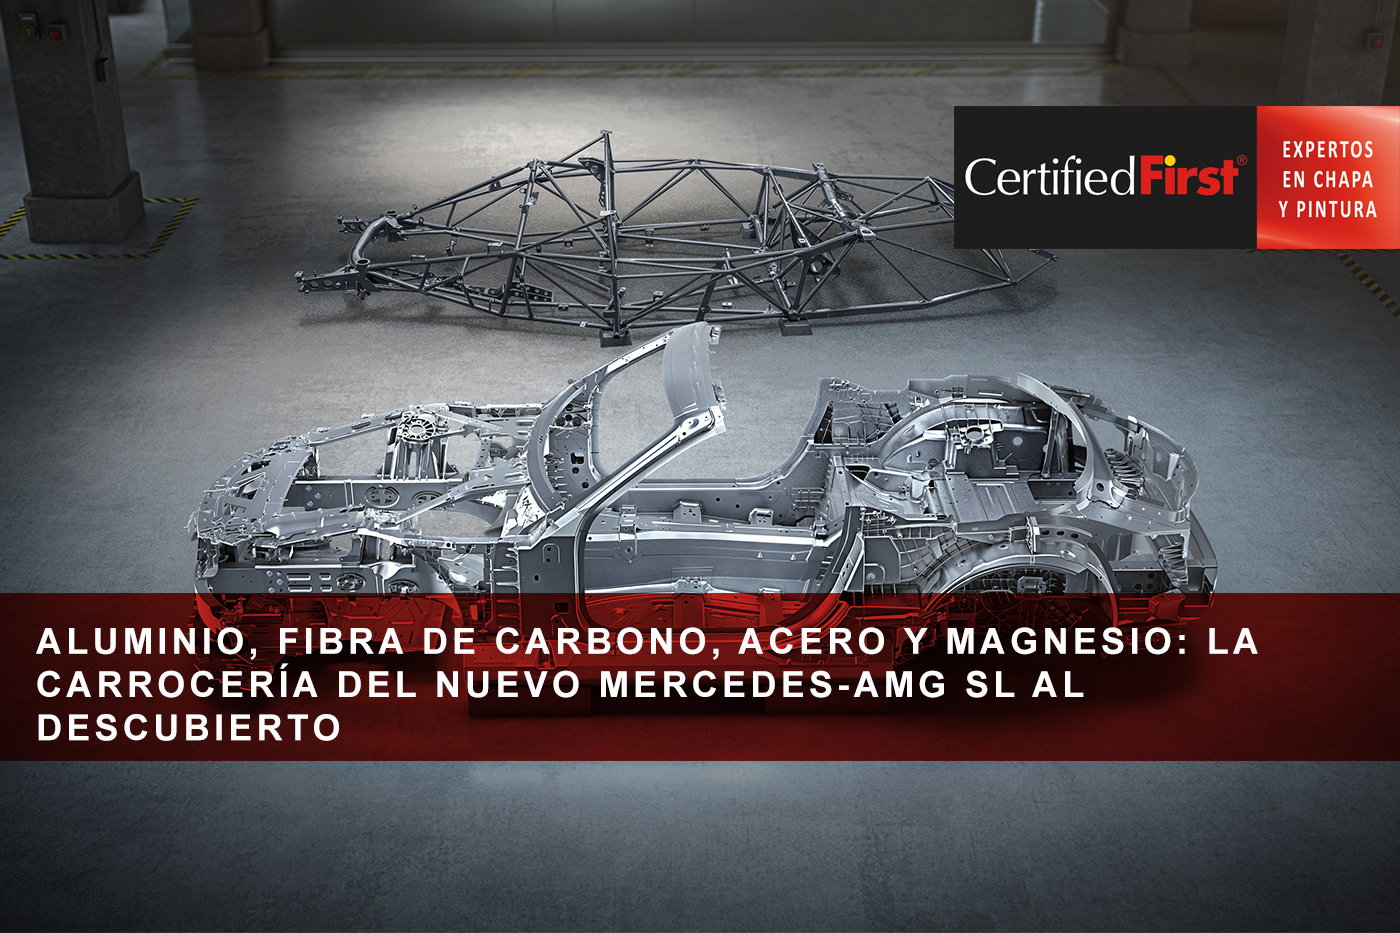 Aluminio, fibra de carbono, acero y magnesio: la carrocería del nuevo Mercedes-AMG SL al descubierto